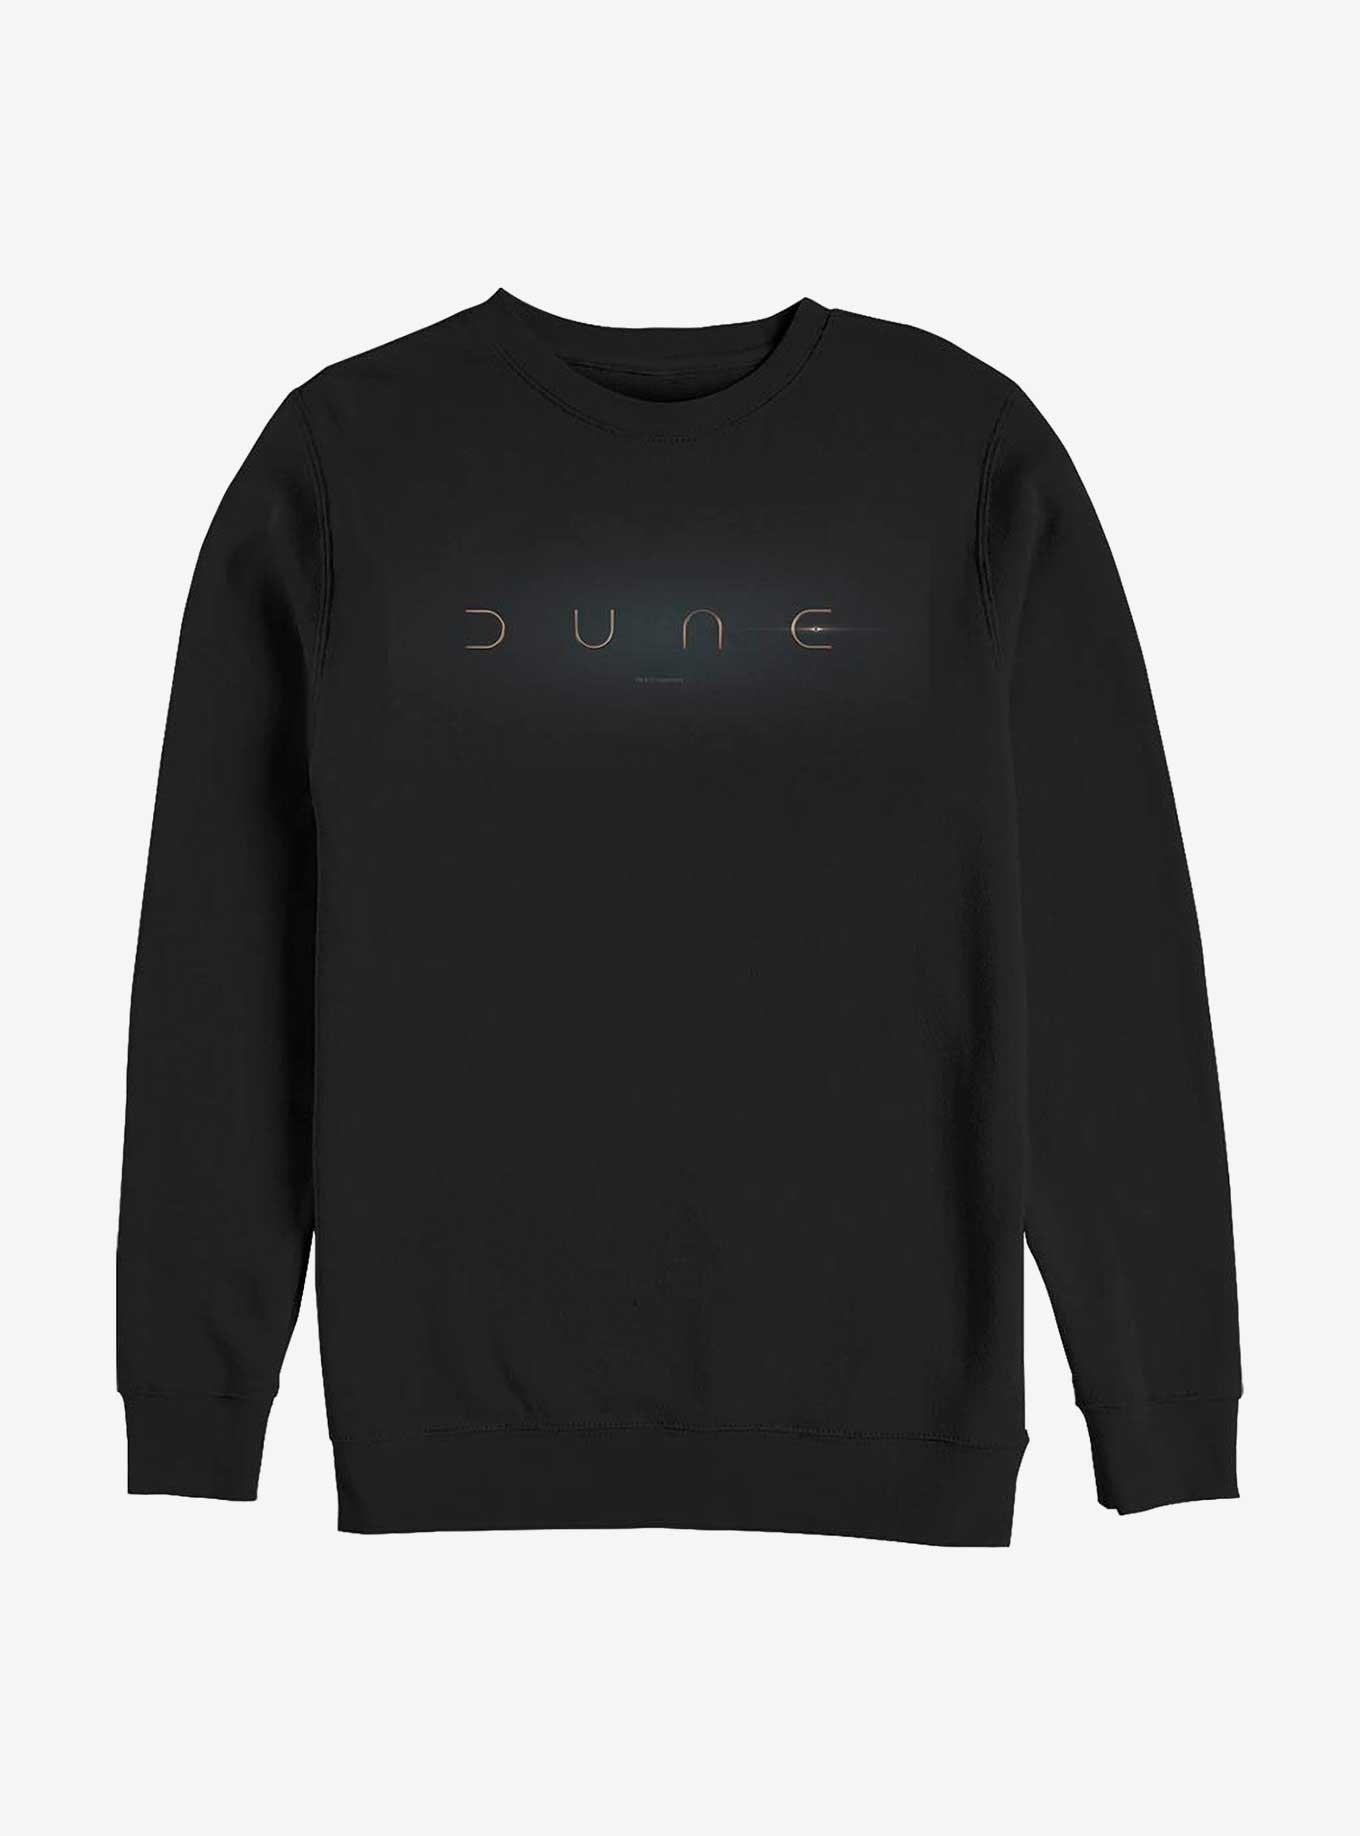 Dune Dune Logo Crew Sweatshirt, BLACK, hi-res